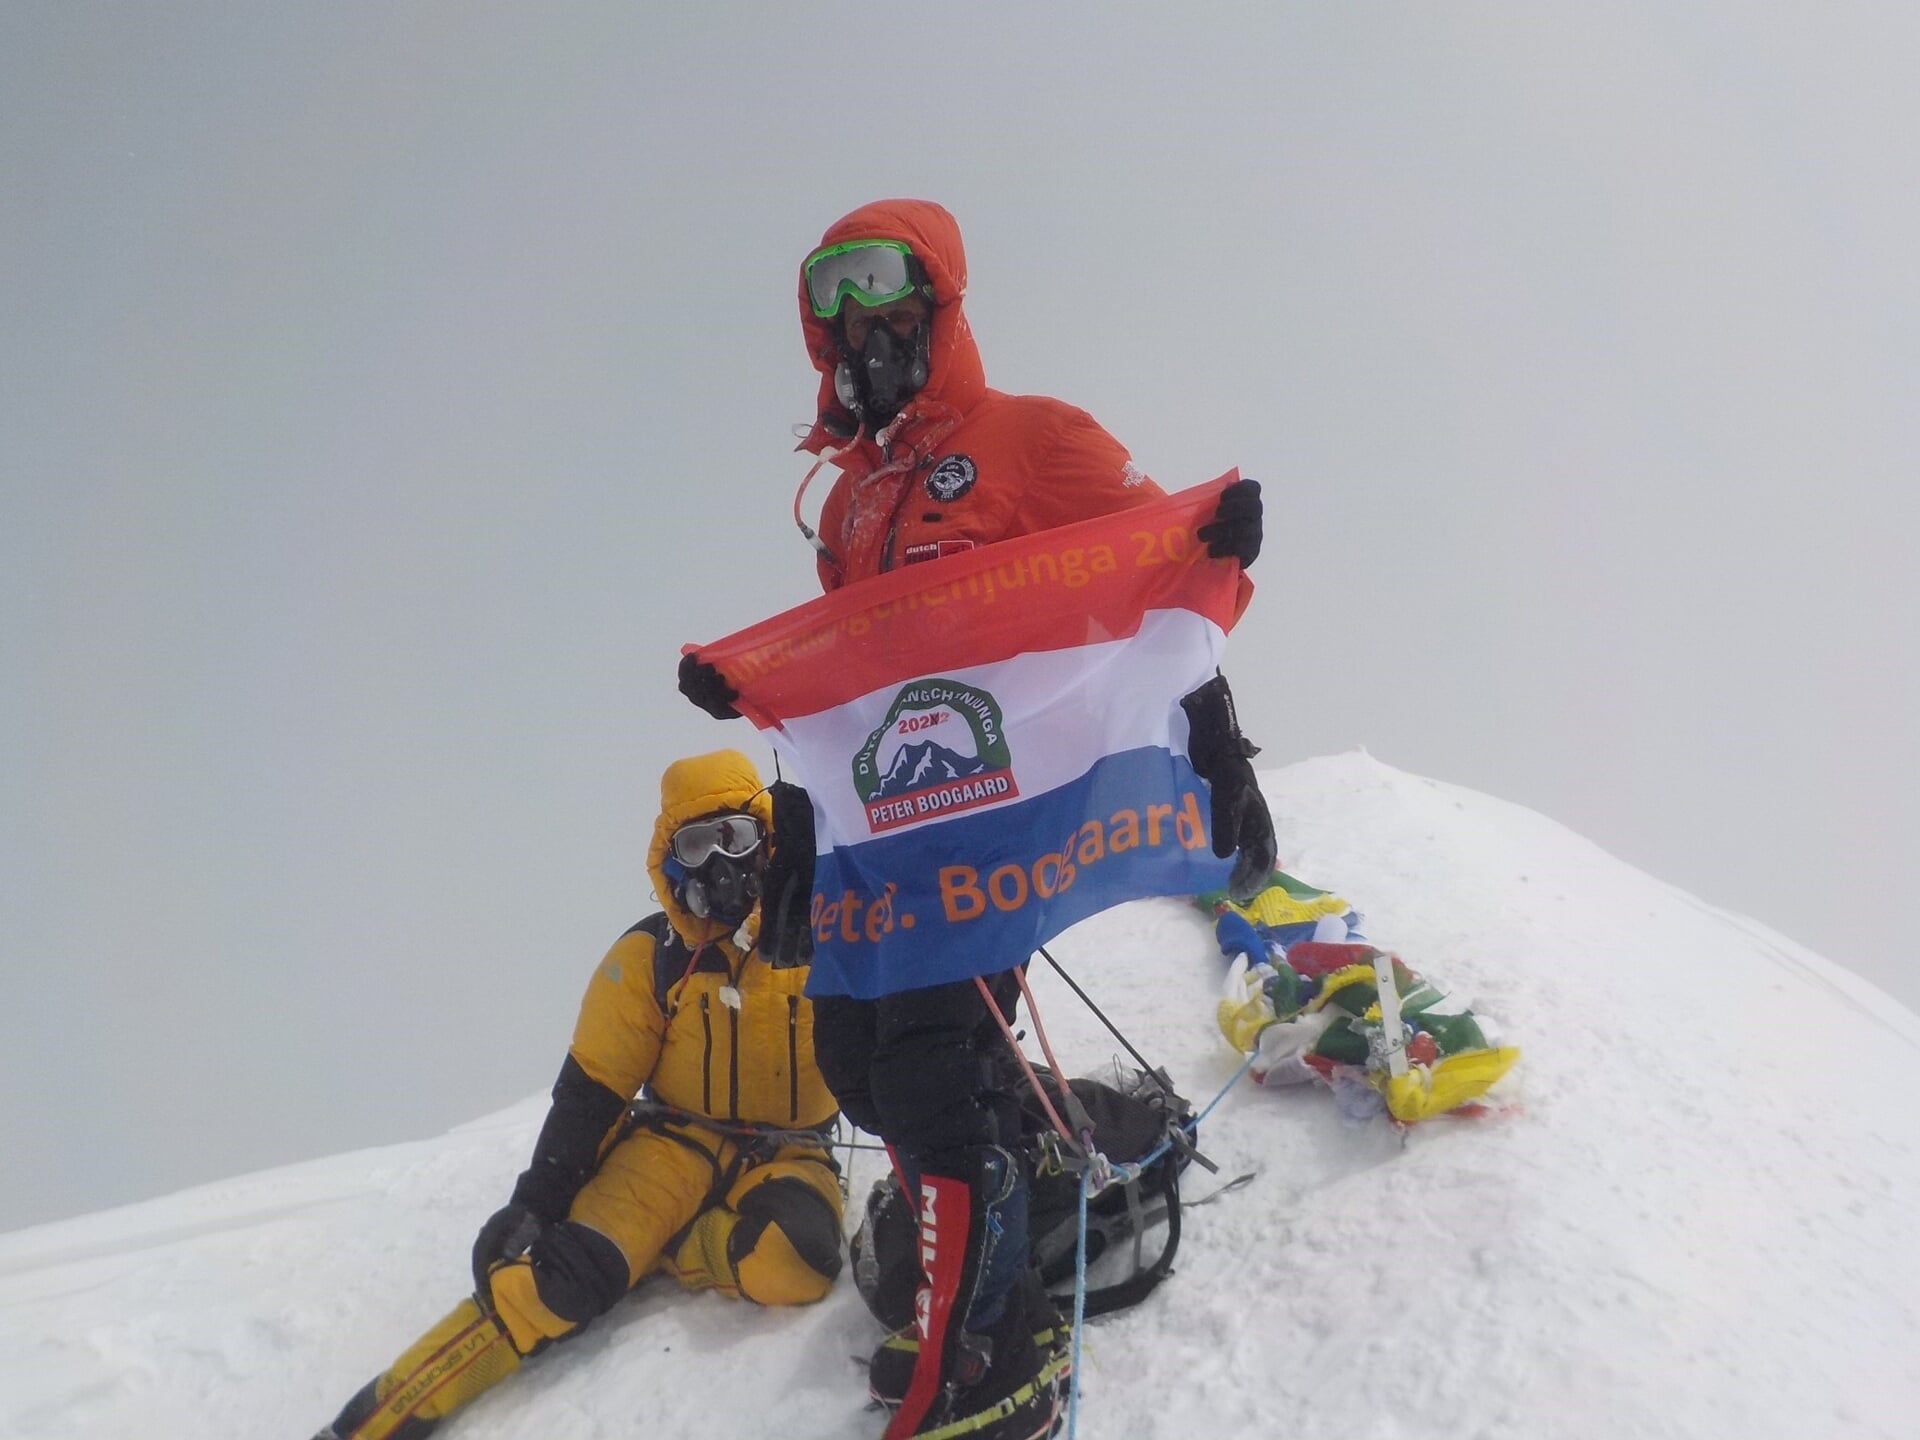 Peter bereikt de top van de Kangchenjunga.